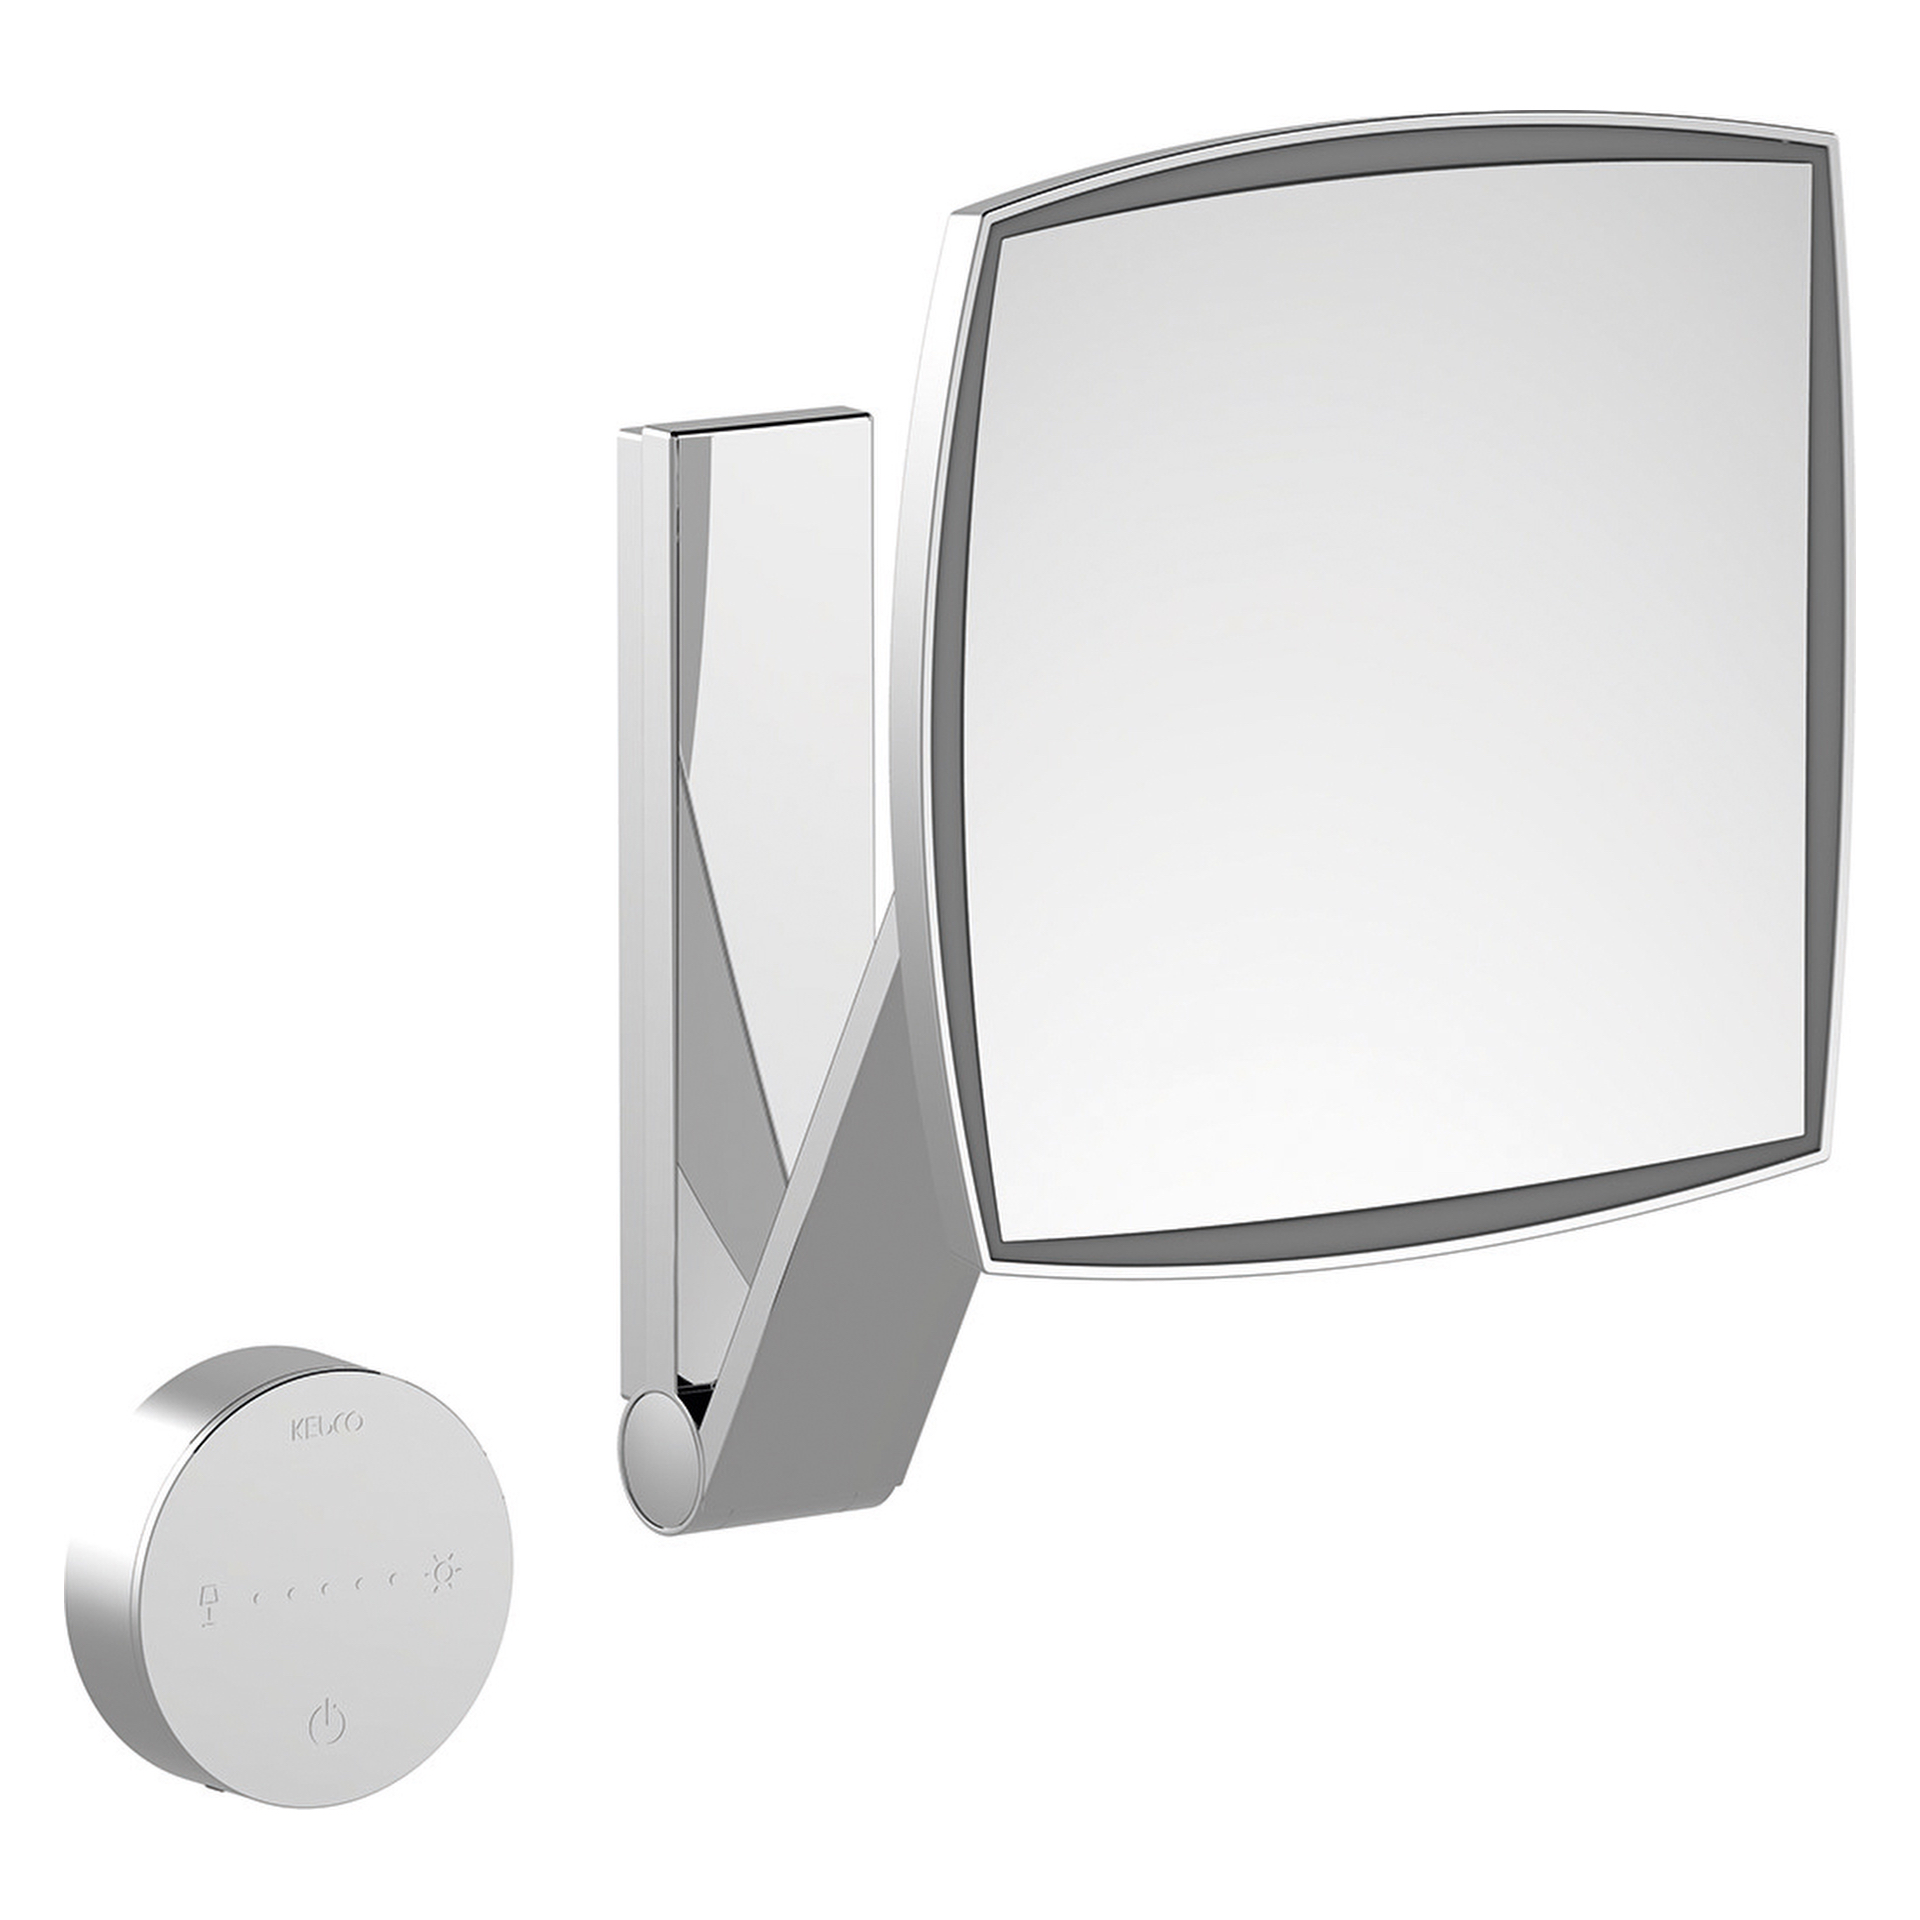 Kosmetikspiegel 17613179002 Kosmetikspiegel iLook_move Wandmodell, eckig/beleuchtet 2 Lichtfarben, ohne Kabel Aluminium-finish